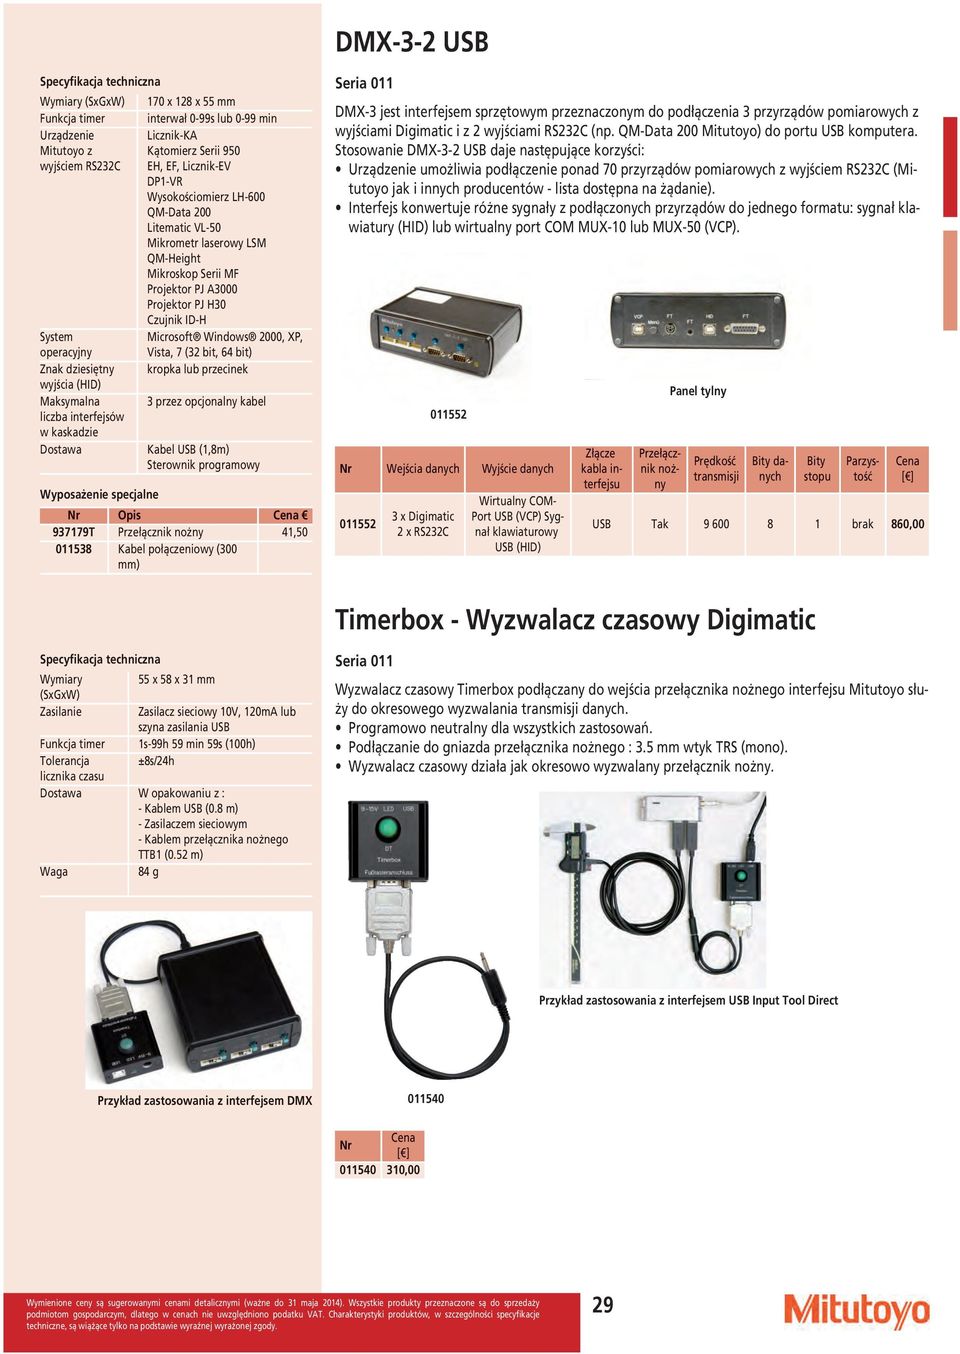 PJ A3000 Projektor PJ H30 Czujnik ID-H Microsoft Windows 2000, XP, Vista, 7 (32 bit, 64 bit) kropka lub przecinek 3 przez opcjonalny kabel Kabel USB (1,8m) Sterownik programowy Opis 011538 Kabel